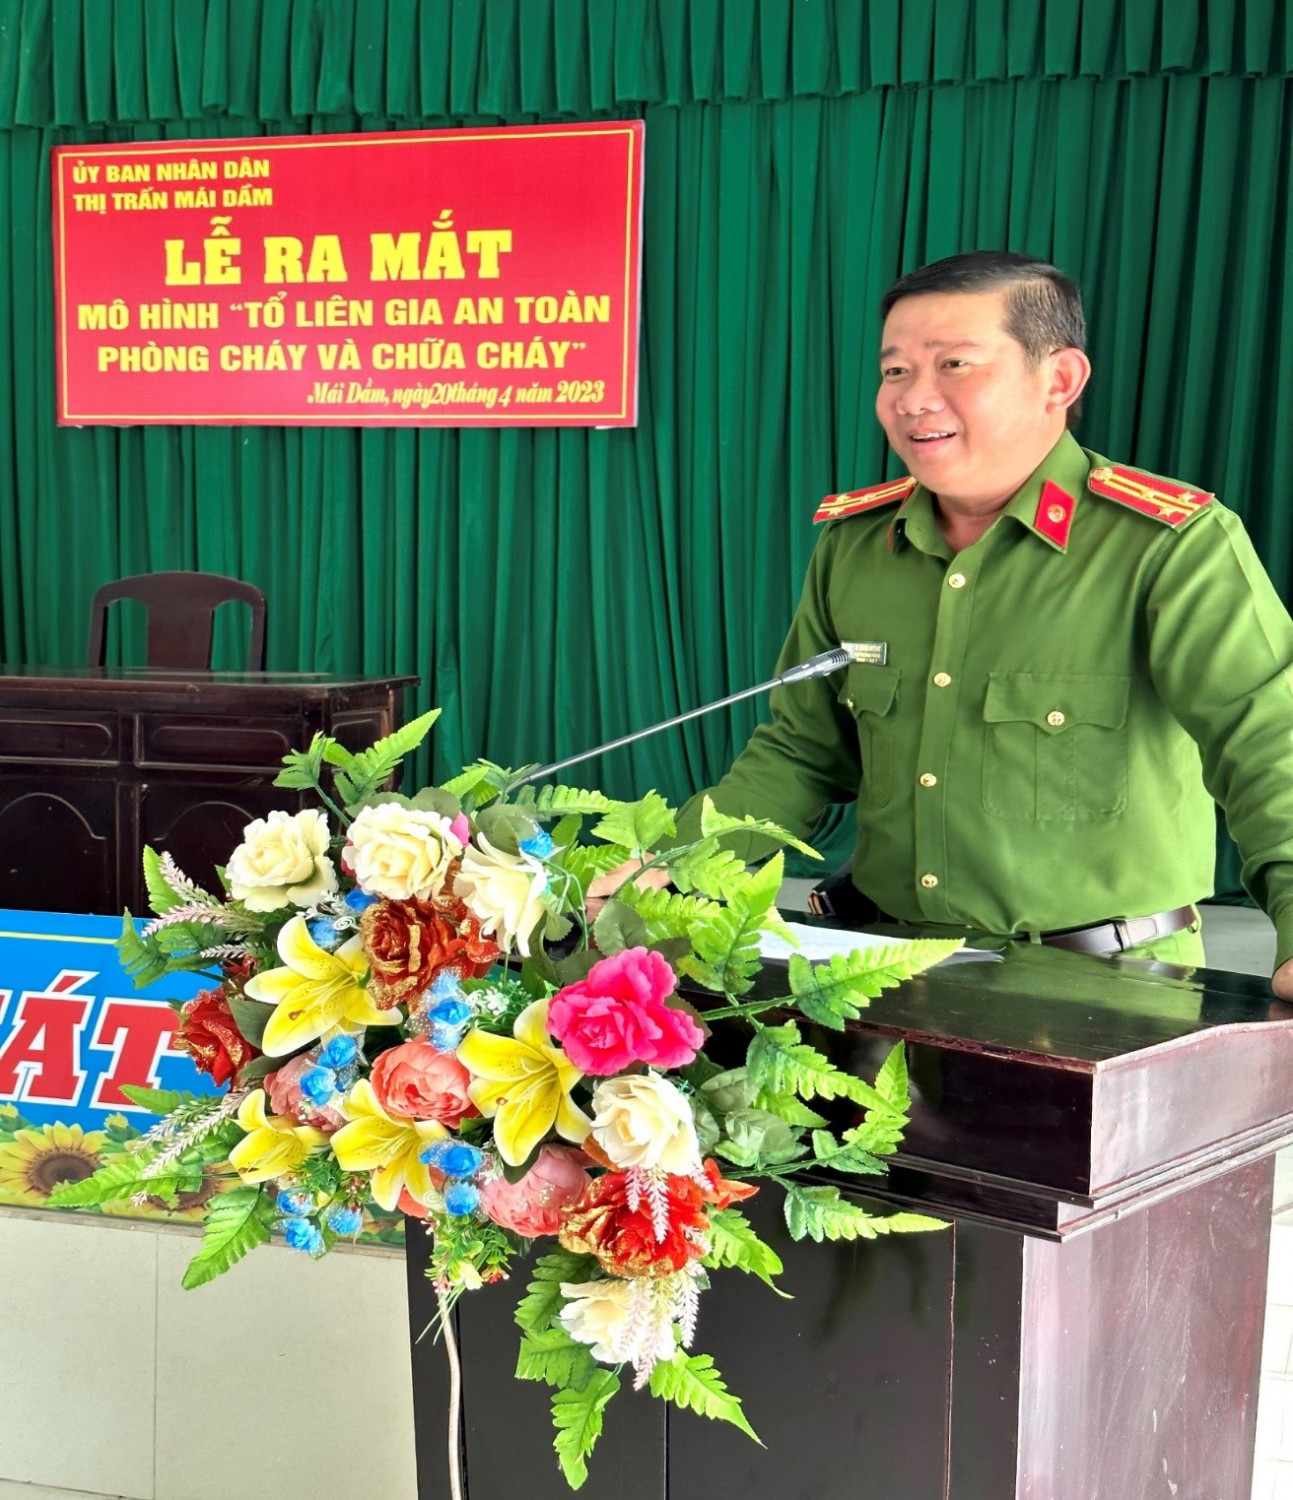 Thượng tá Lê Hùng Cường, Phó Trưởng phòng Cảnh sát PCCC và CNCH Công an tỉnh phát biểu tại buổi ra mắt